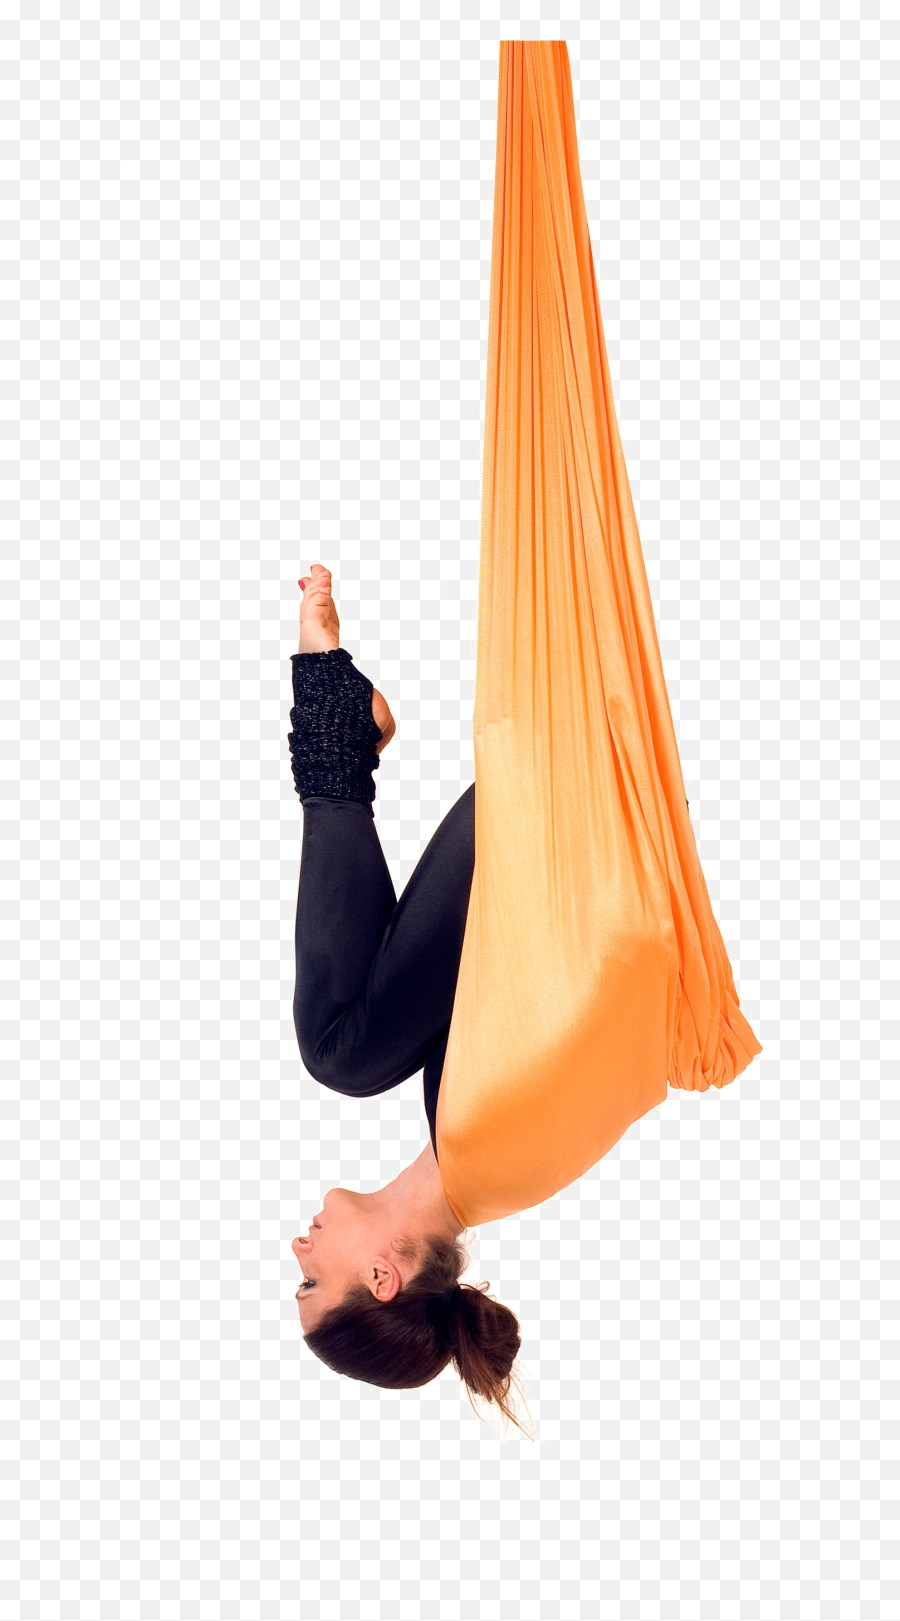 Aerial Yoga Pose Png Transparent File Png Mart - Aerialyoga Poses Transparent Background Emoji,Yoga Png